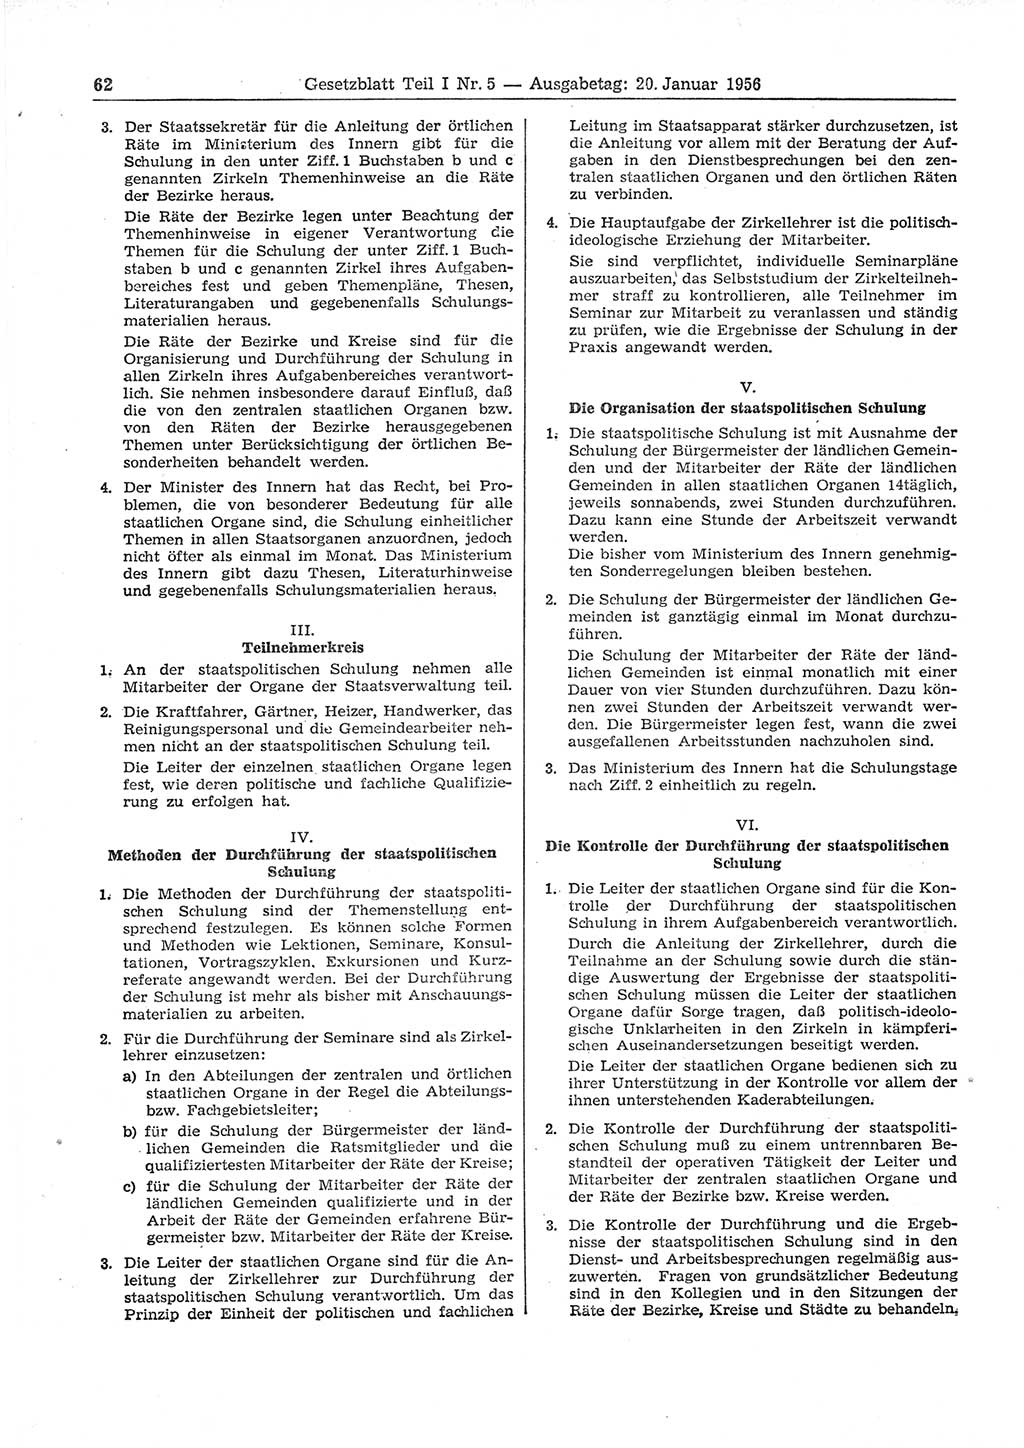 Gesetzblatt (GBl.) der Deutschen Demokratischen Republik (DDR) Teil Ⅰ 1956, Seite 62 (GBl. DDR Ⅰ 1956, S. 62)